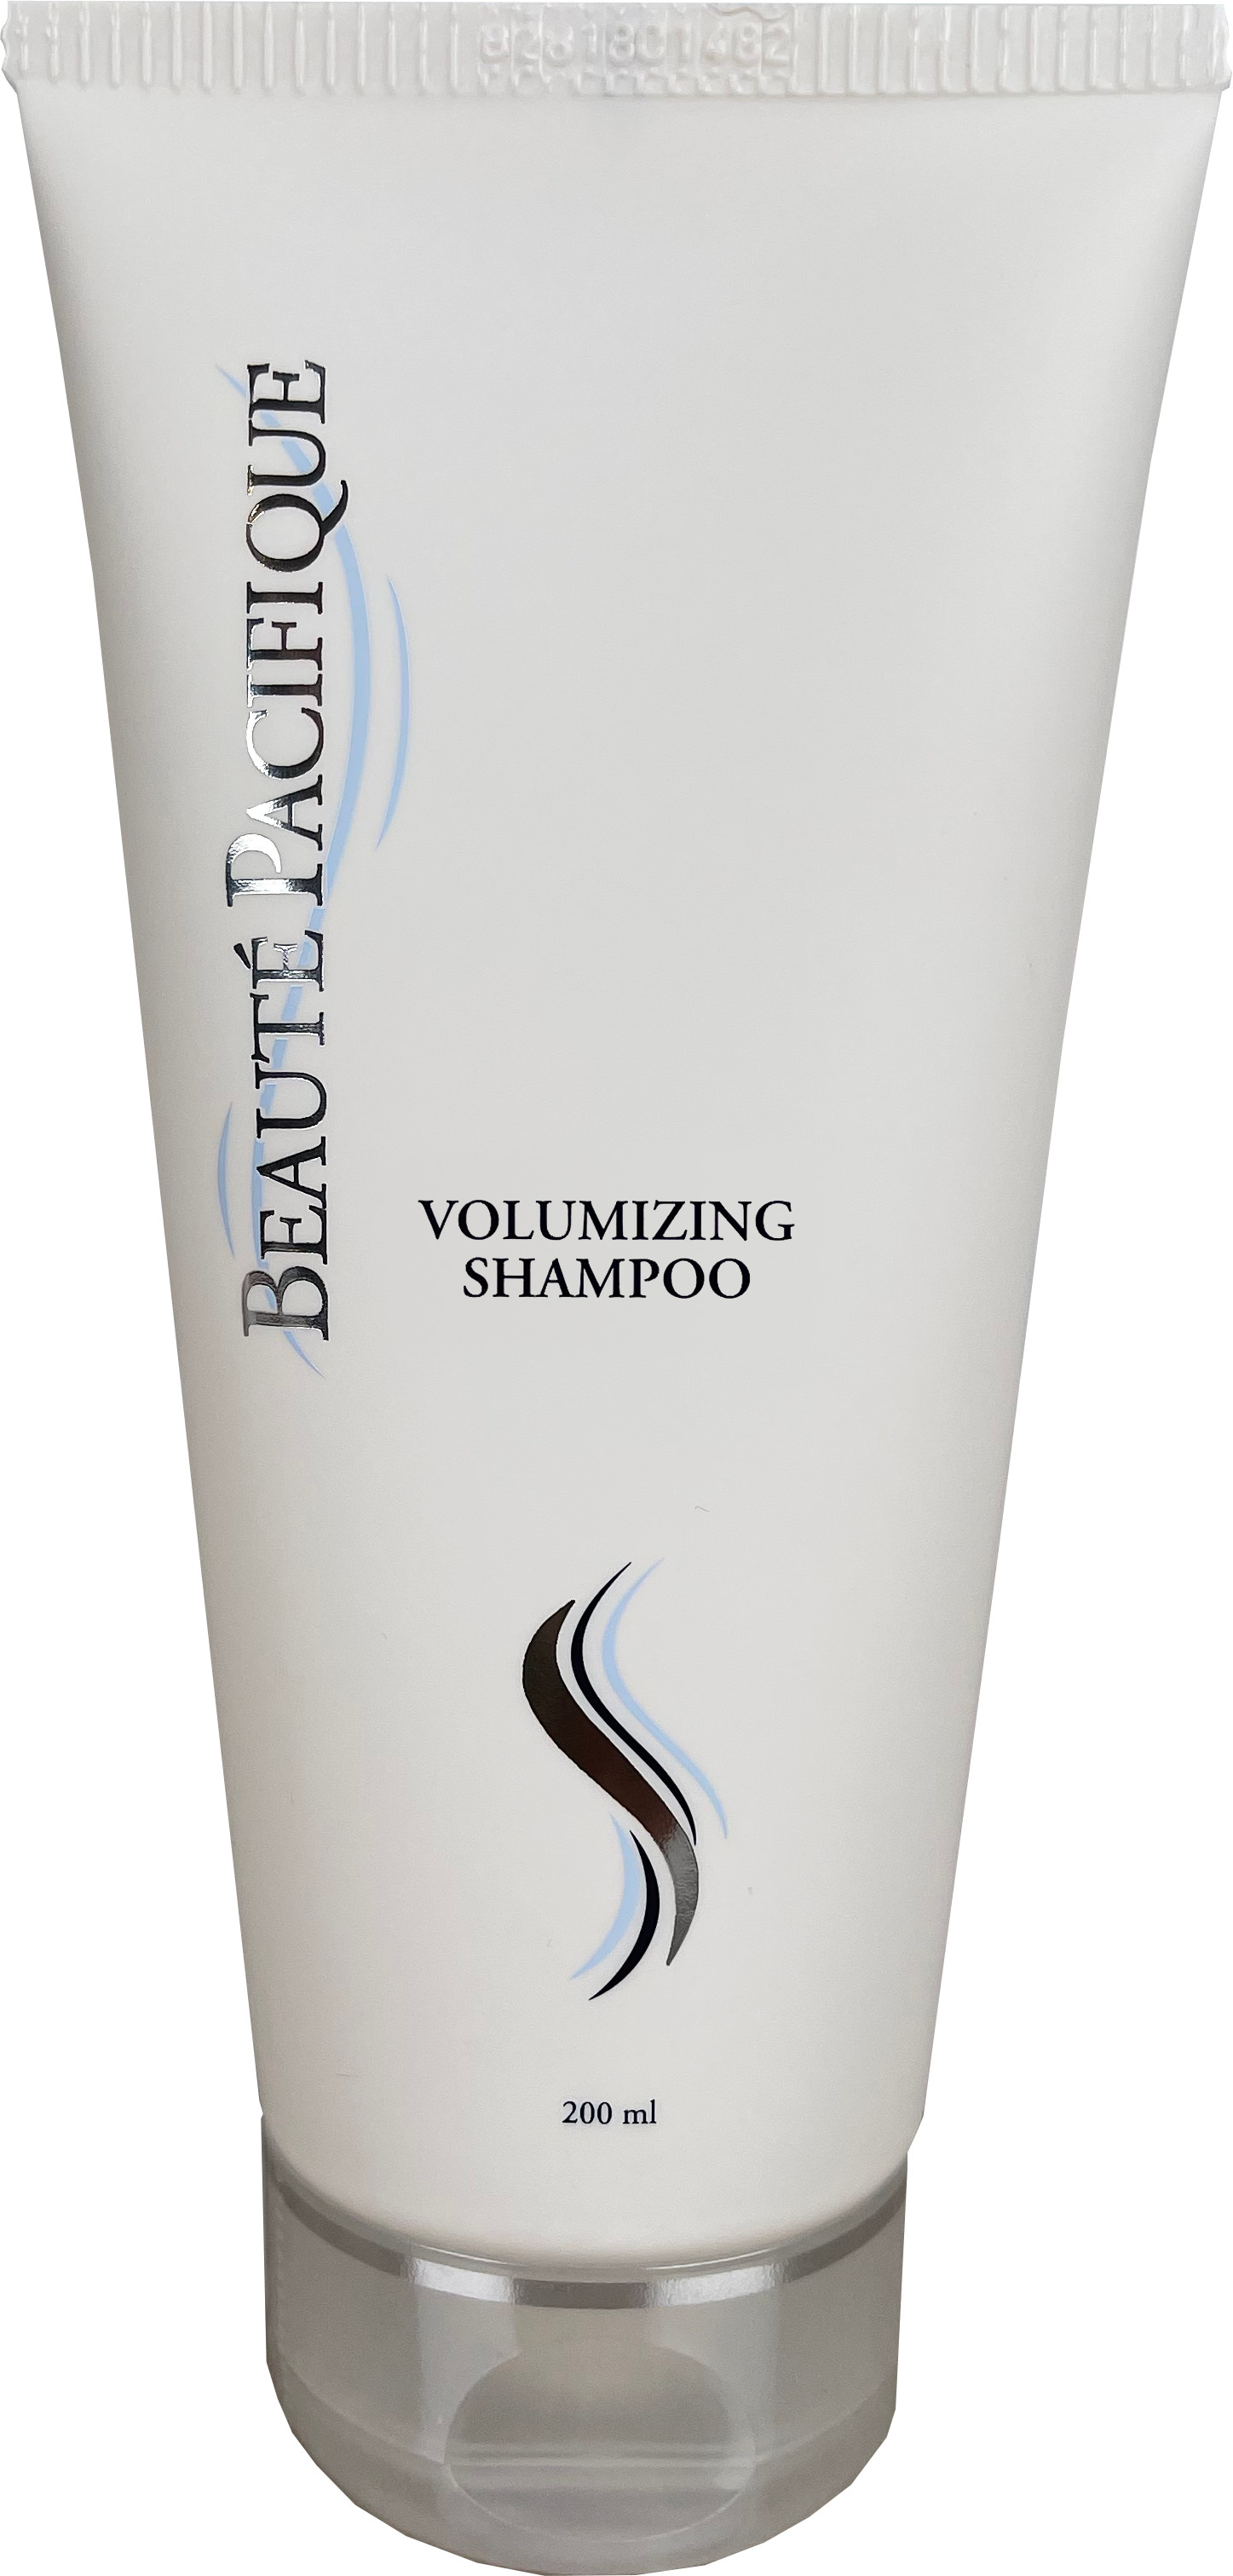  Volumizing Shampoo